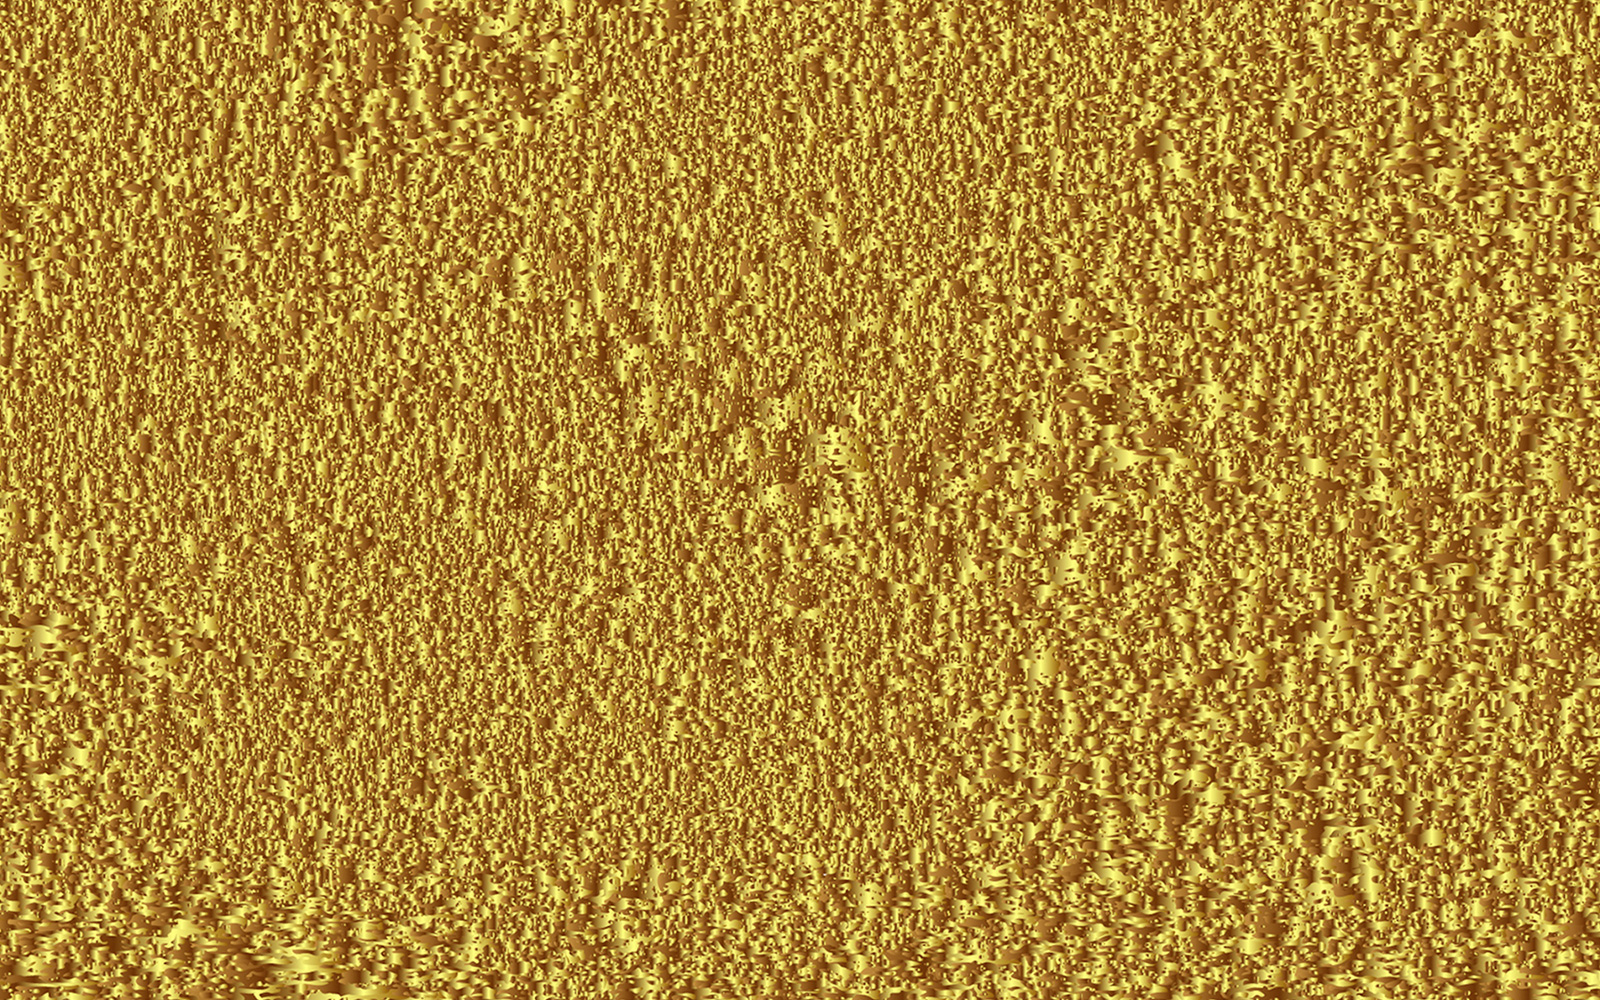 Golden shiny grunge background